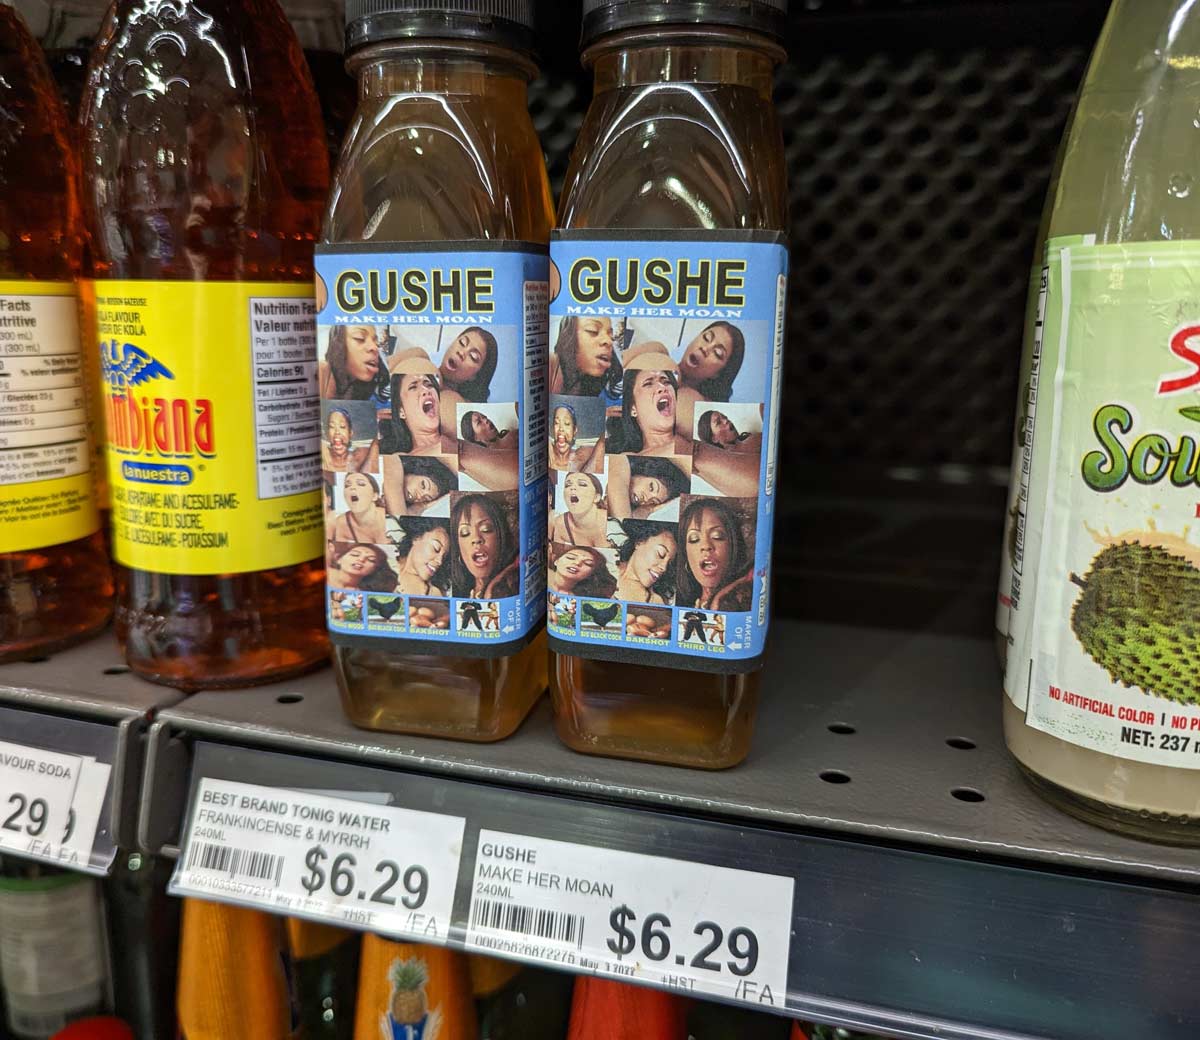 What does Gushe taste like?